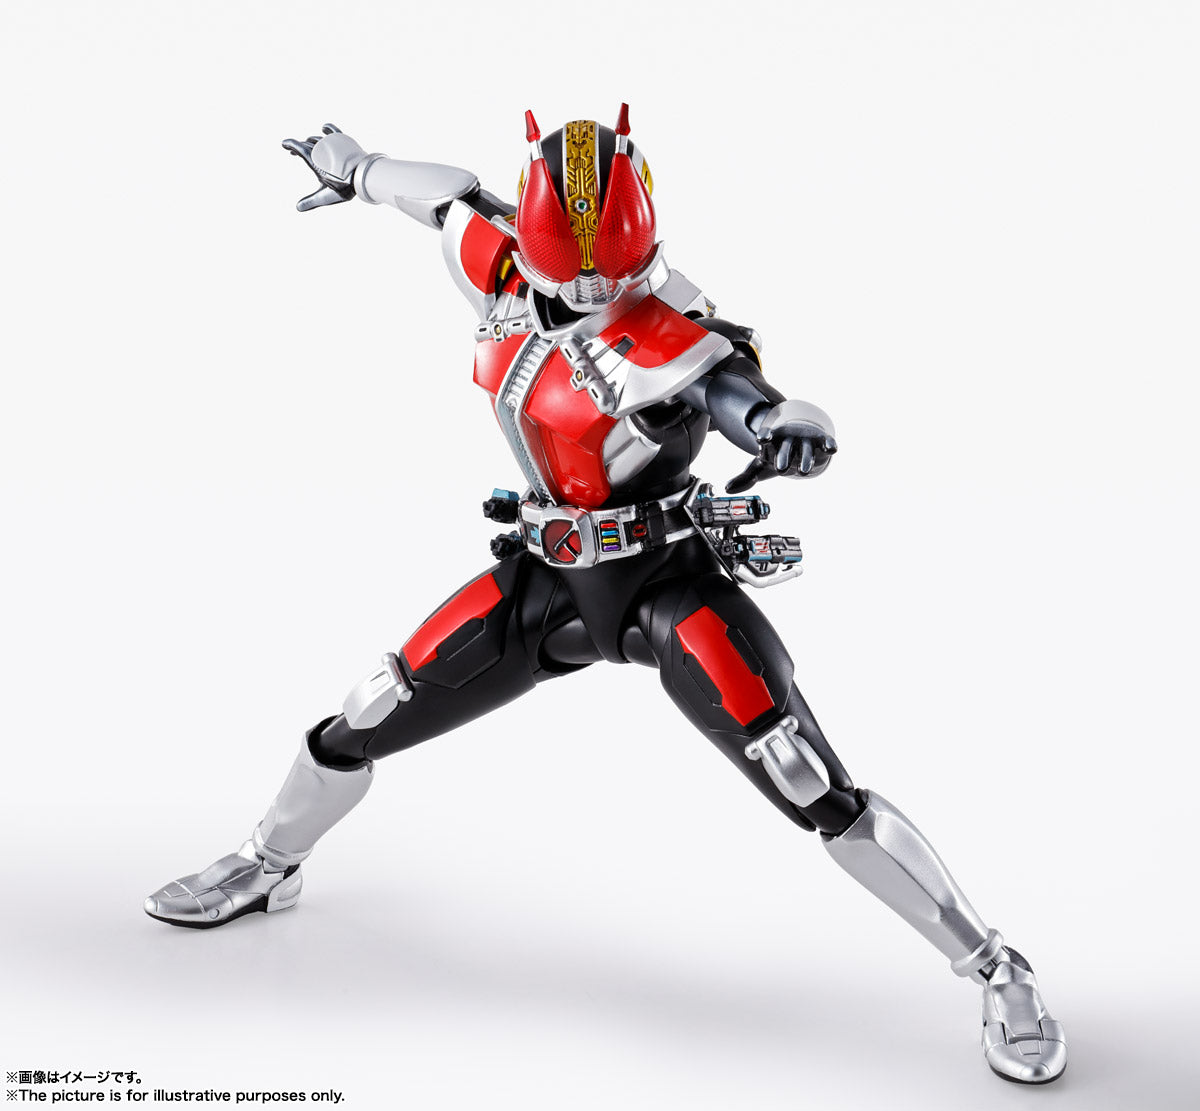 SH Figuarts Kamen Rider Den-O Sword Form / Gun Form